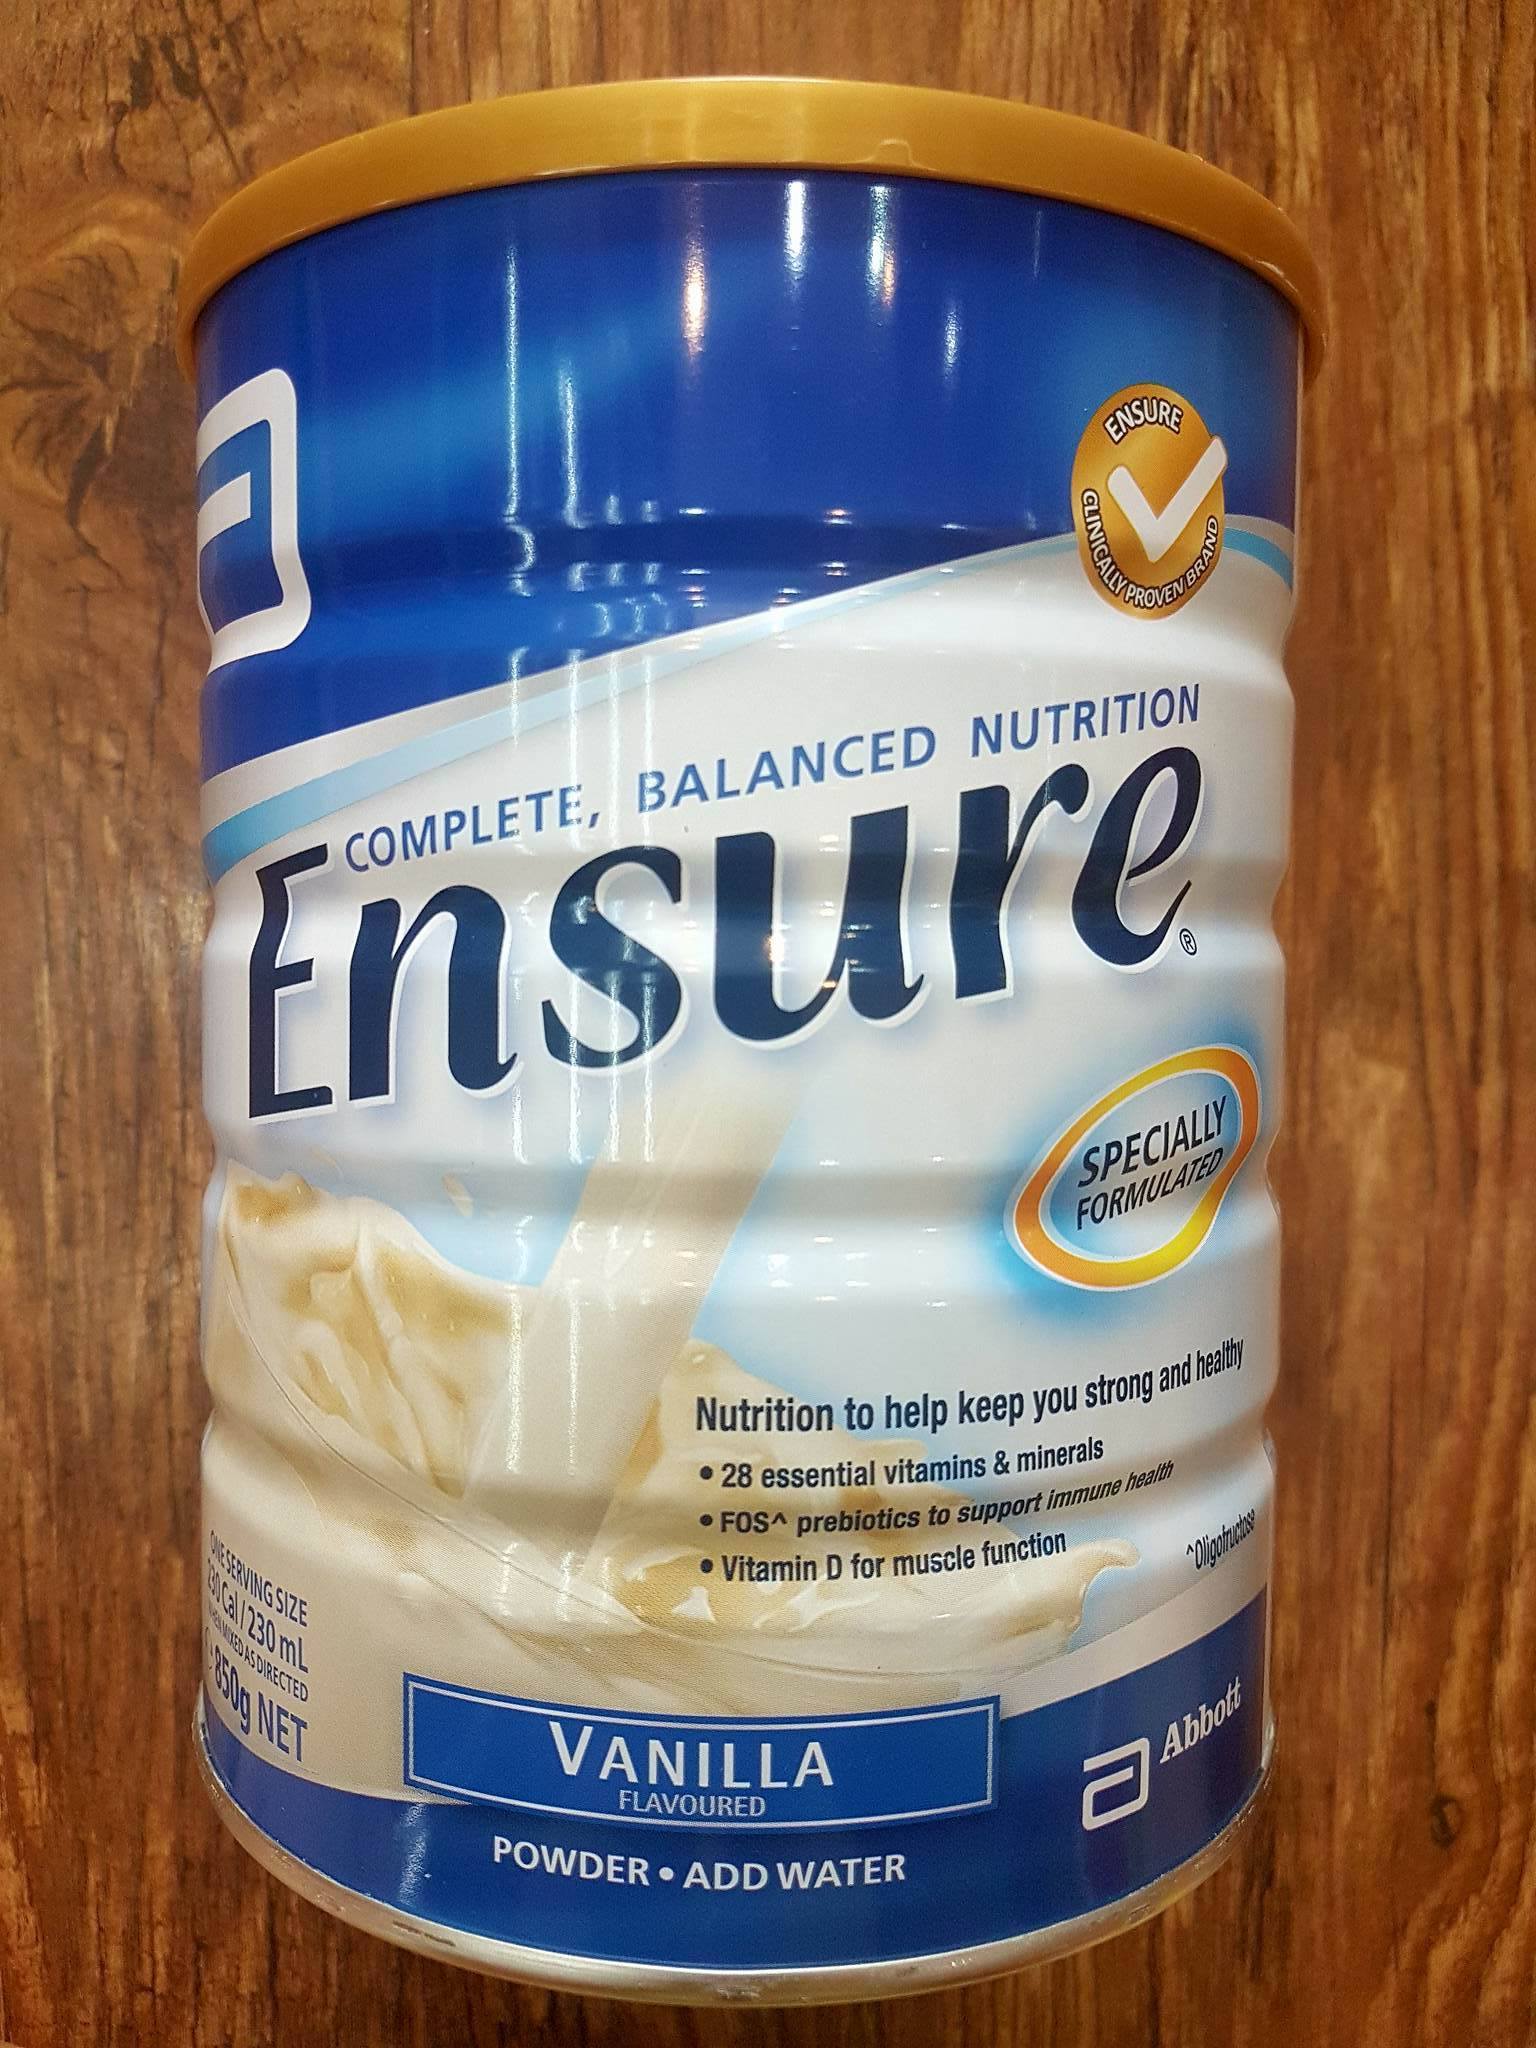 Sữa Ensure Úc hương Vanni 850g bổ sung vitamin và khoáng chất, thích hợp cho người gầy, người kém ăn, suy dinh dưỡng, người mới ốm dậy